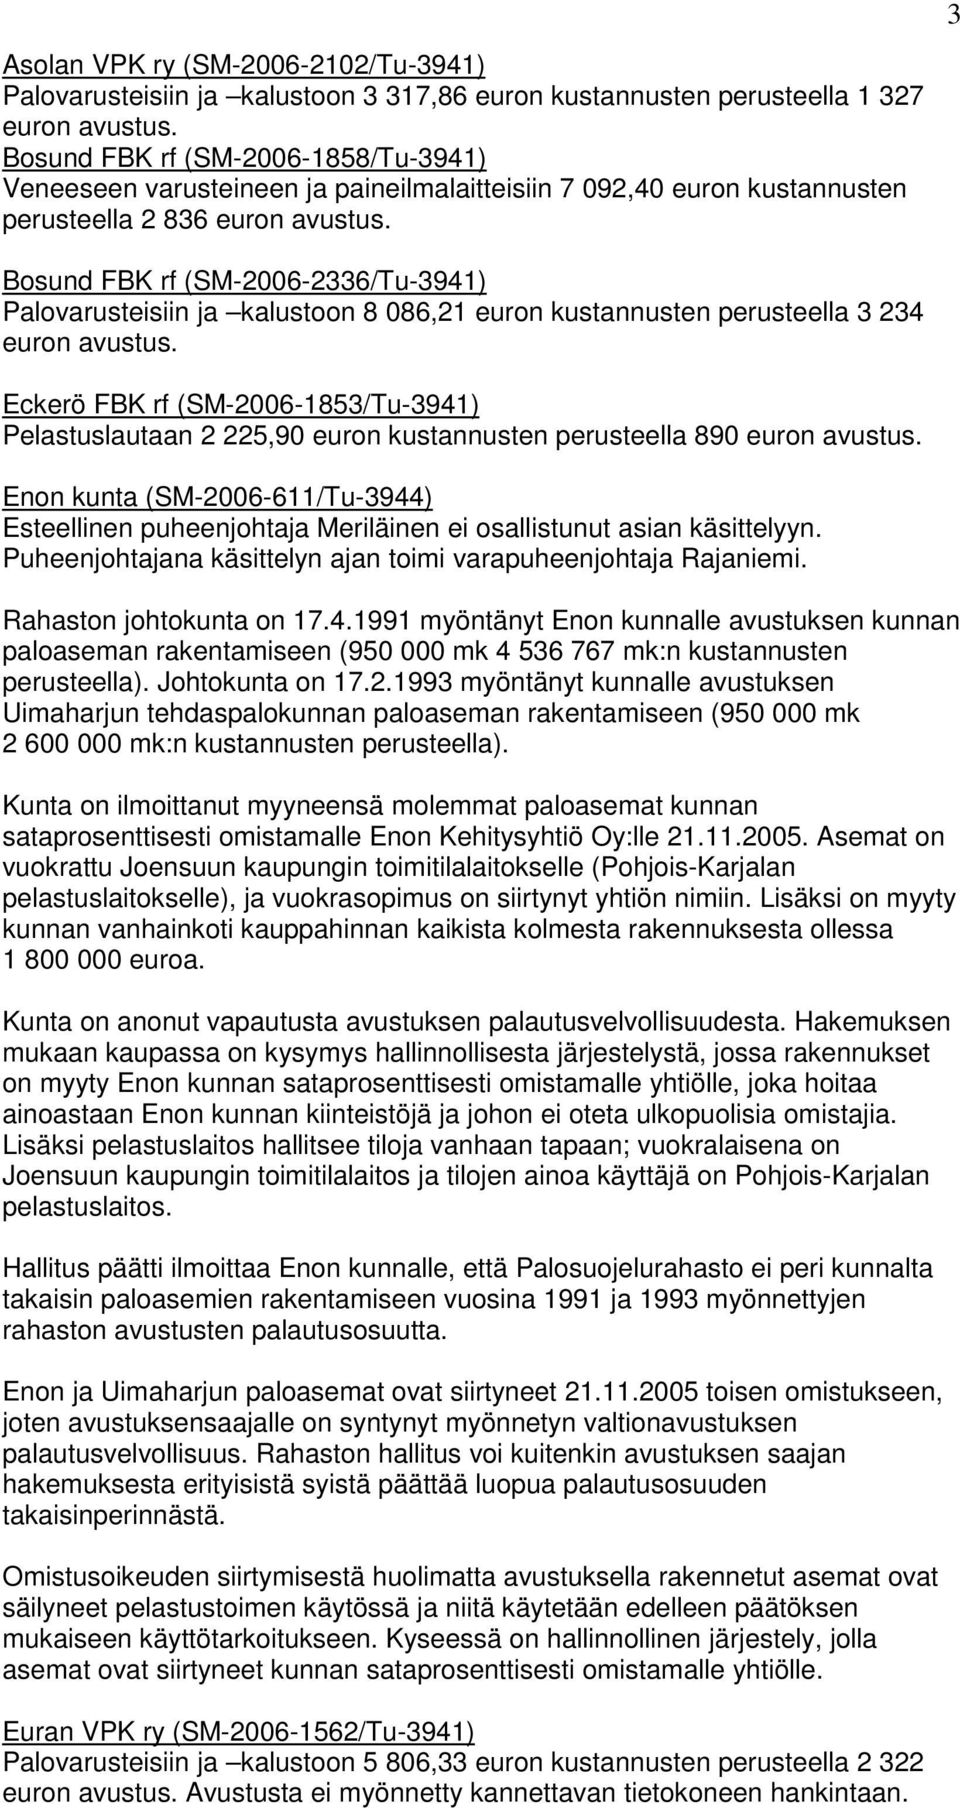 Pelastuslautaan 2 225,90 euron kustannusten perusteella 890 Enon kunta (SM-2006-611/Tu-3944) Esteellinen puheenjohtaja Meriläinen ei osallistunut asian käsittelyyn.